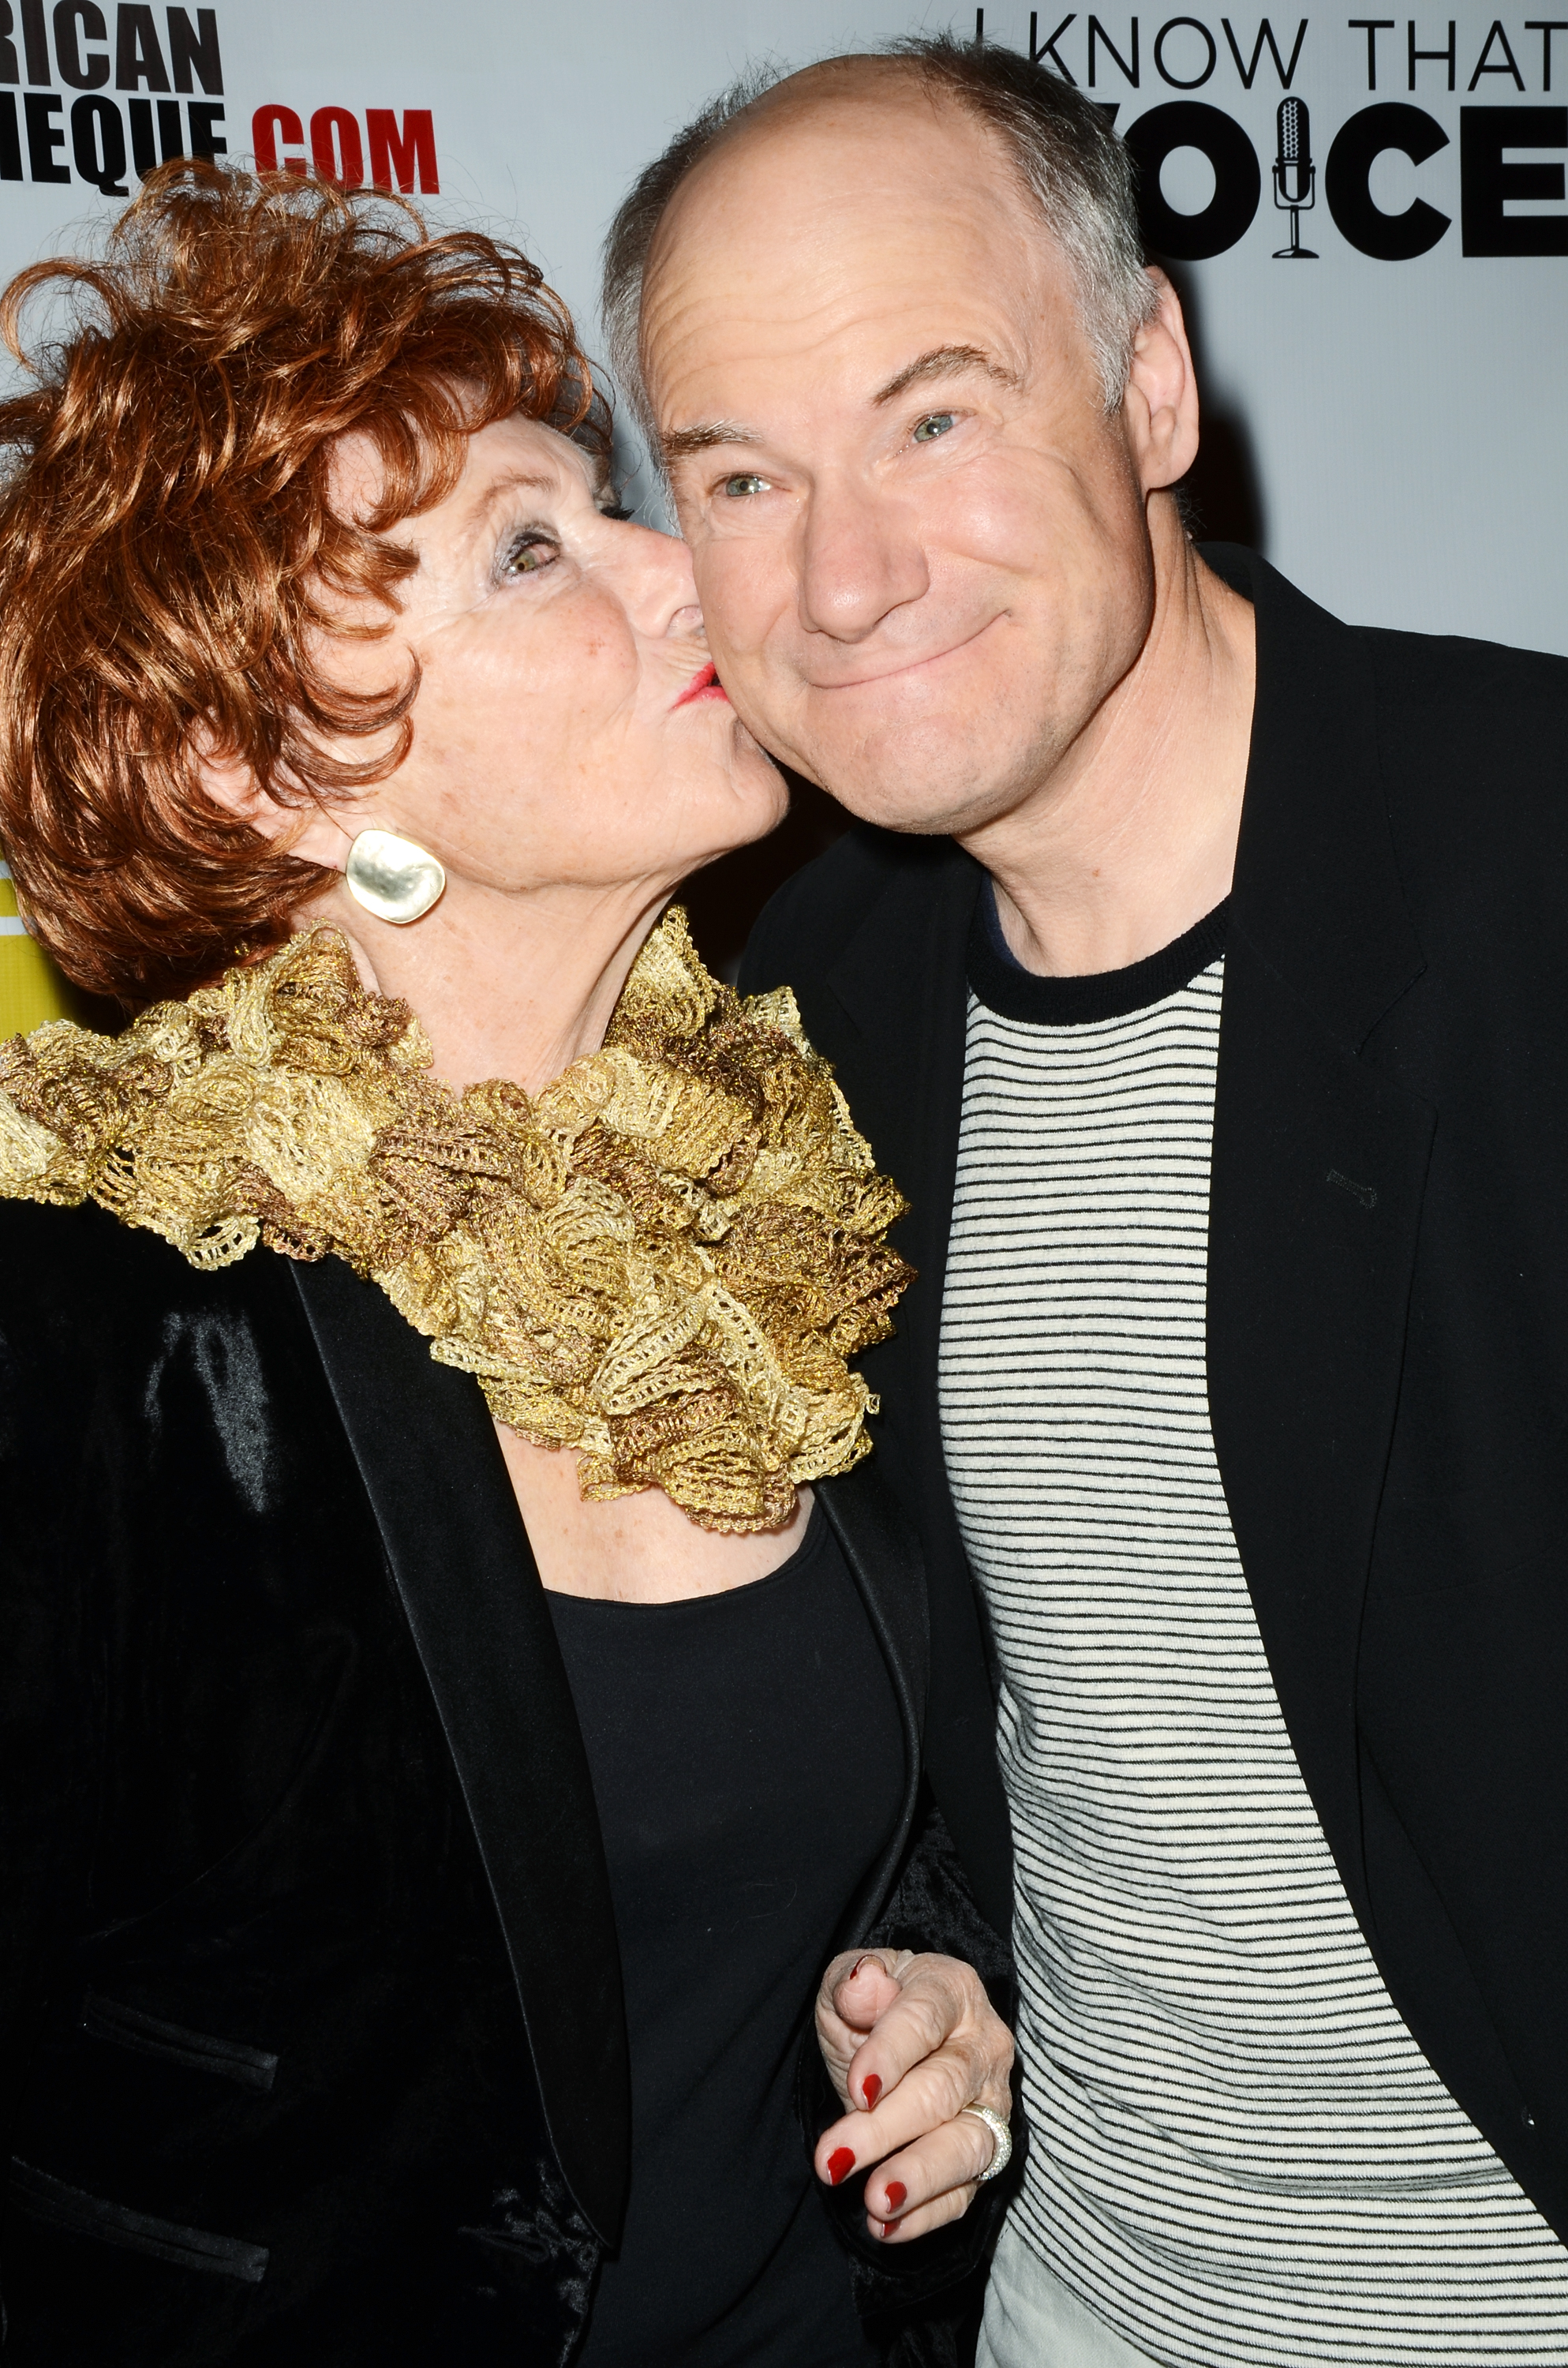 Marion Ross et son fils Jim Meskimen lors de la première à Los Angeles de "I Know That Voice" le 6 novembre 2013 à Hollywood, Californie | Source : Getty Images